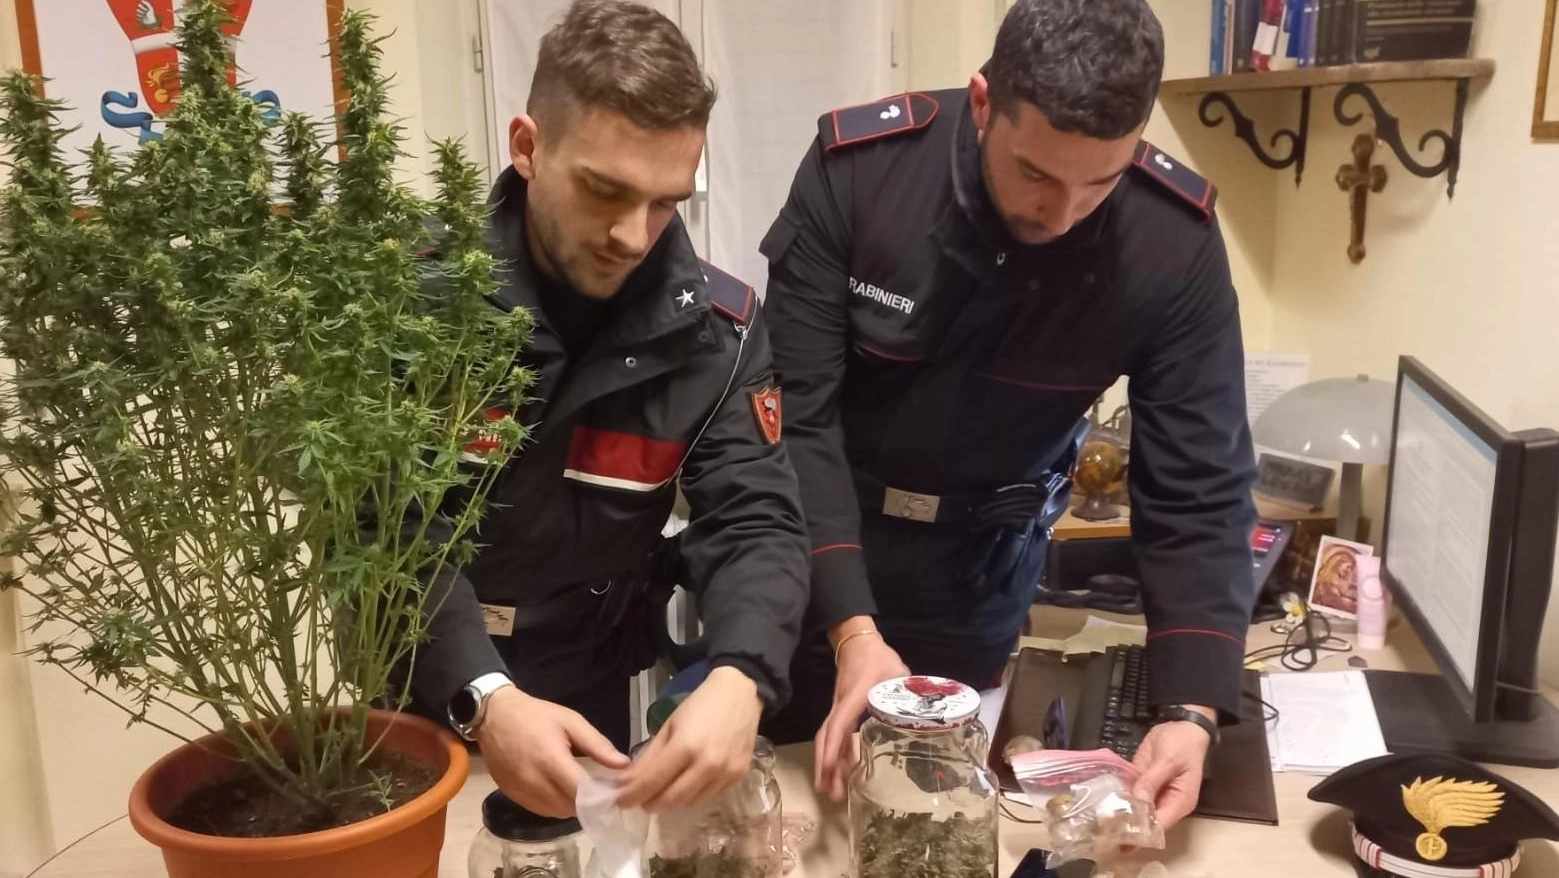 Una serra di marijuana in camera da letto, il sequestro dei carabinieri